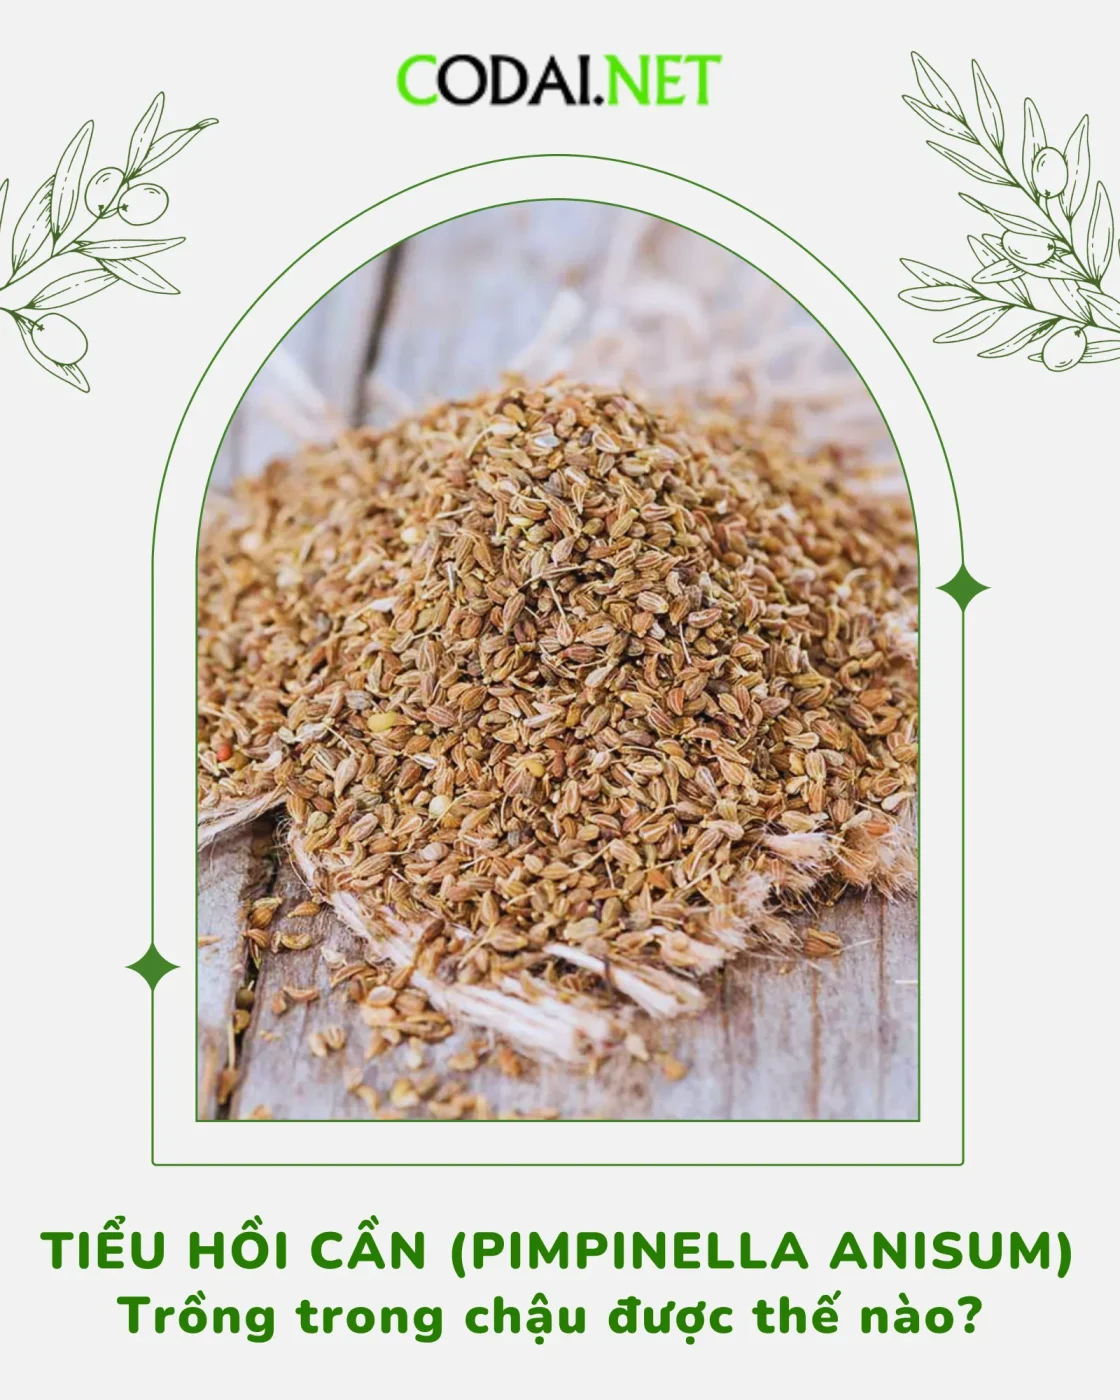 Phương pháp trồng Tiểu Hồi Cần (Pimpinella anisum) trong chậu 1